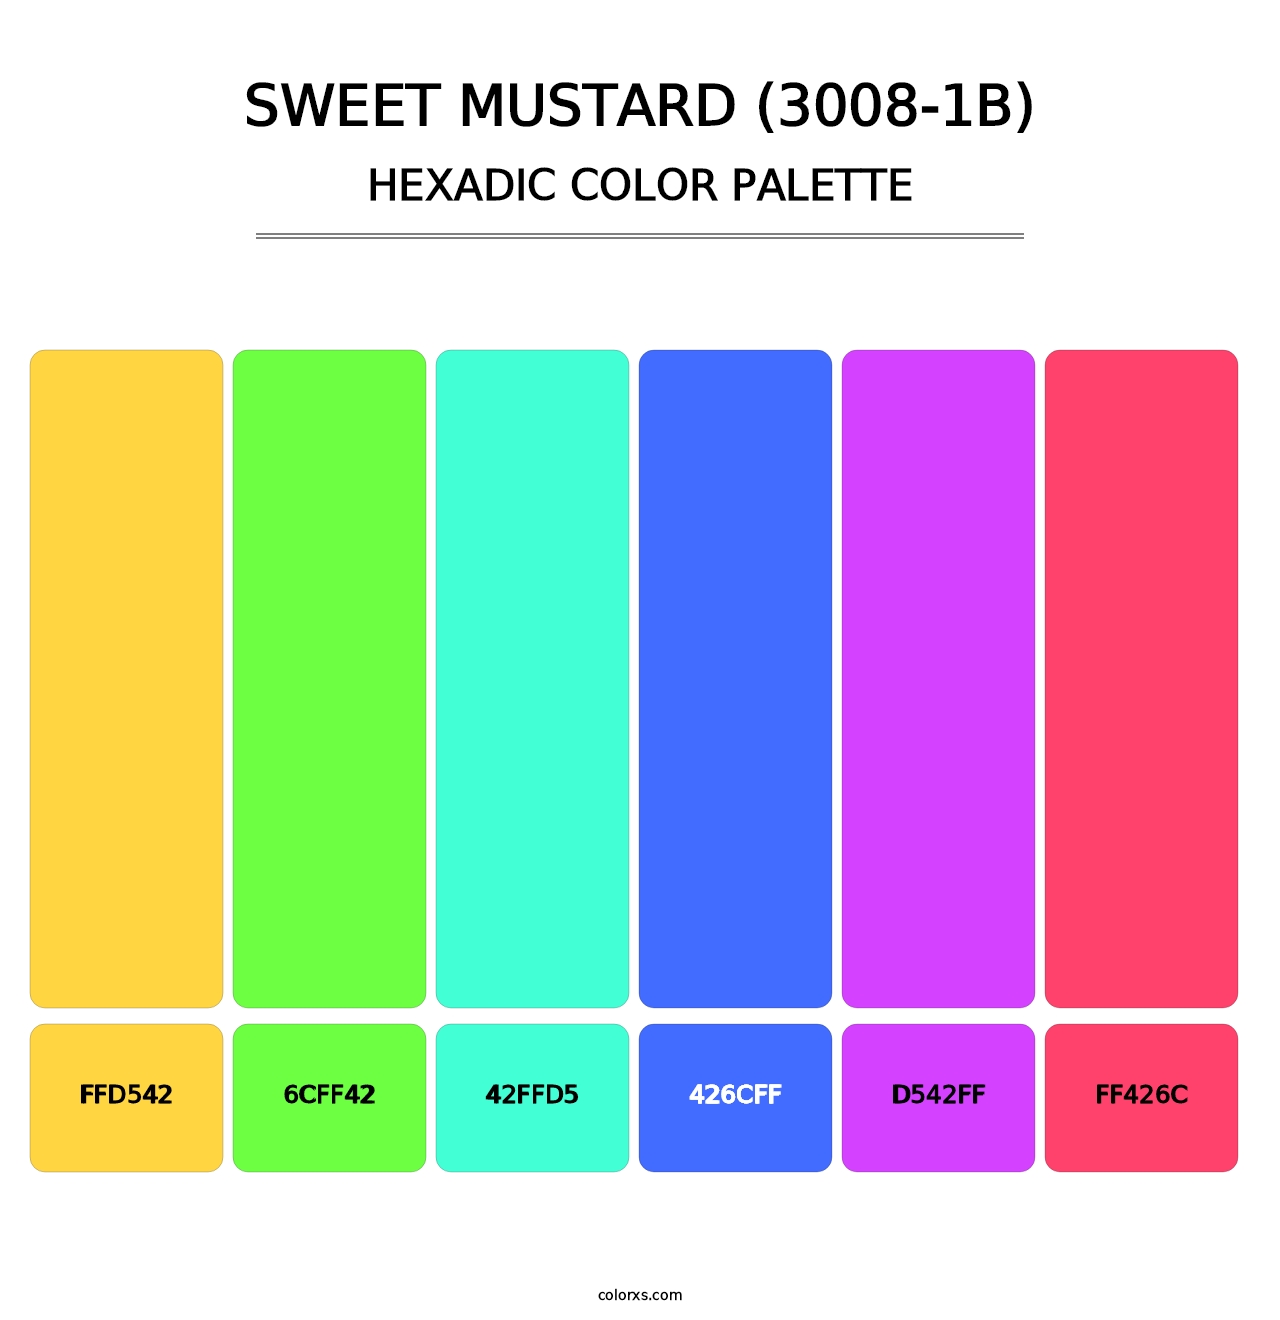 Sweet Mustard (3008-1B) - Hexadic Color Palette